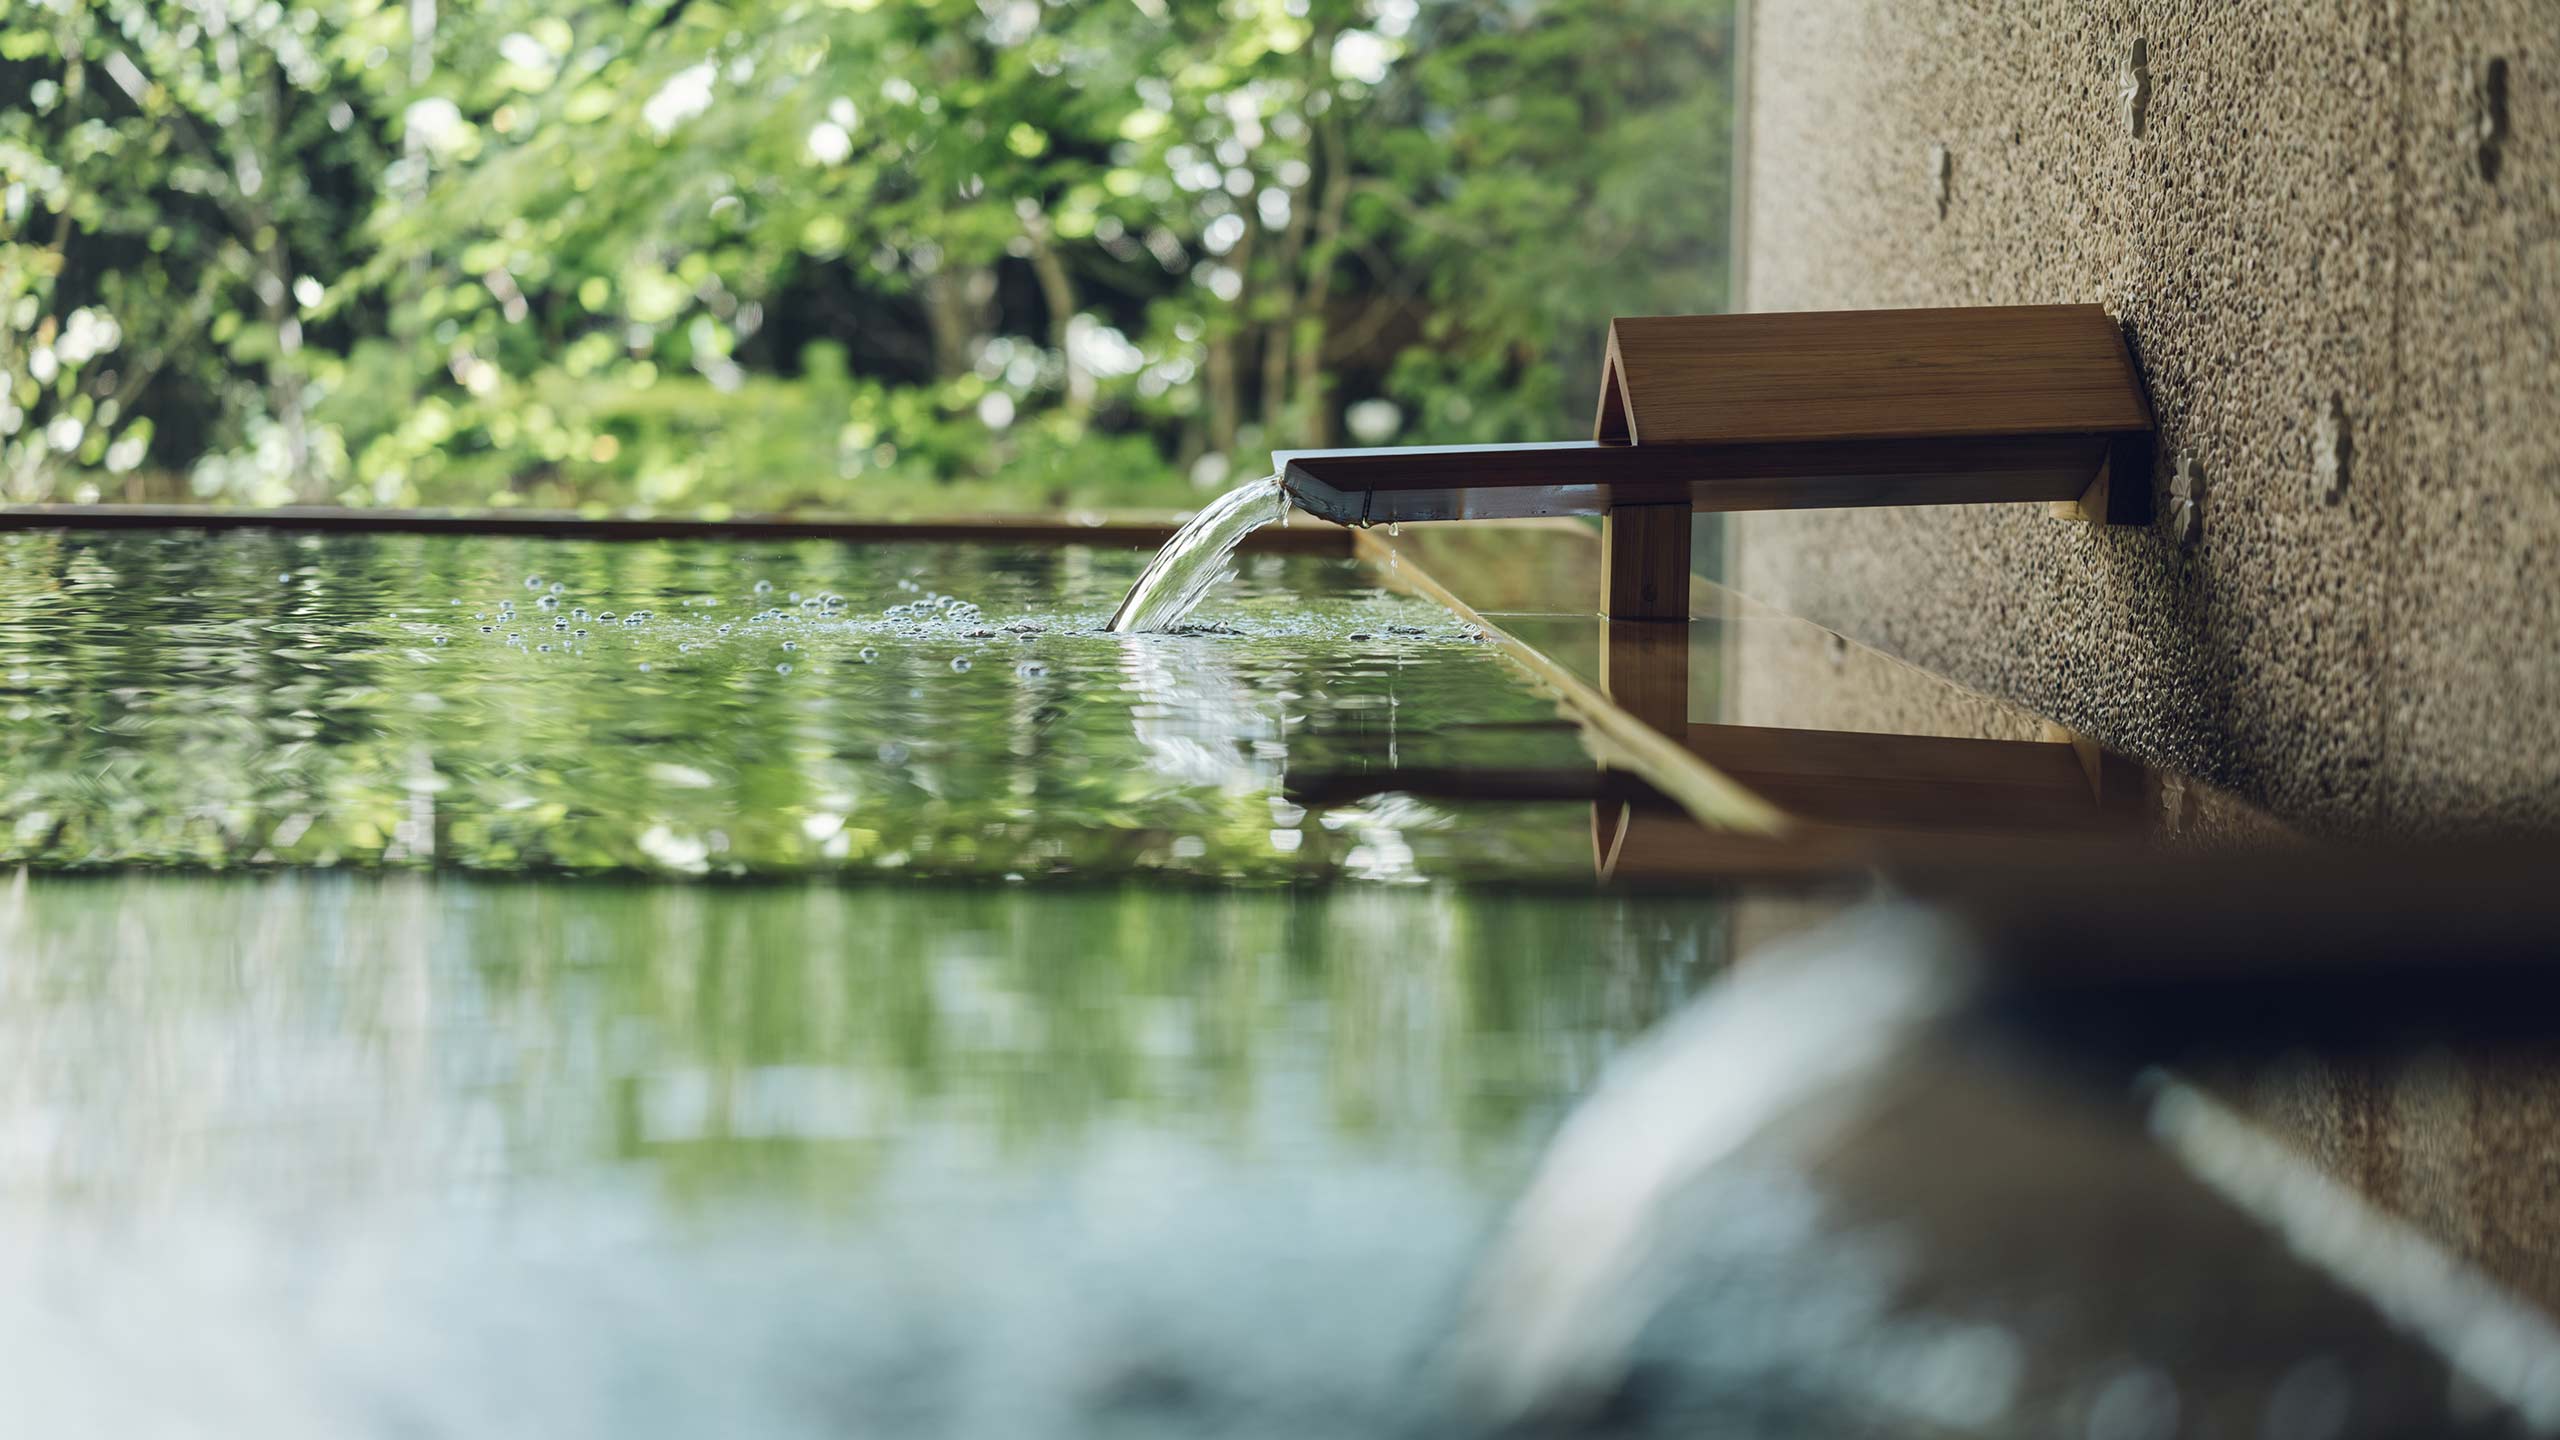 hoshino-resorts-kai-beppu-japan-public-hot-spring-flowing-water